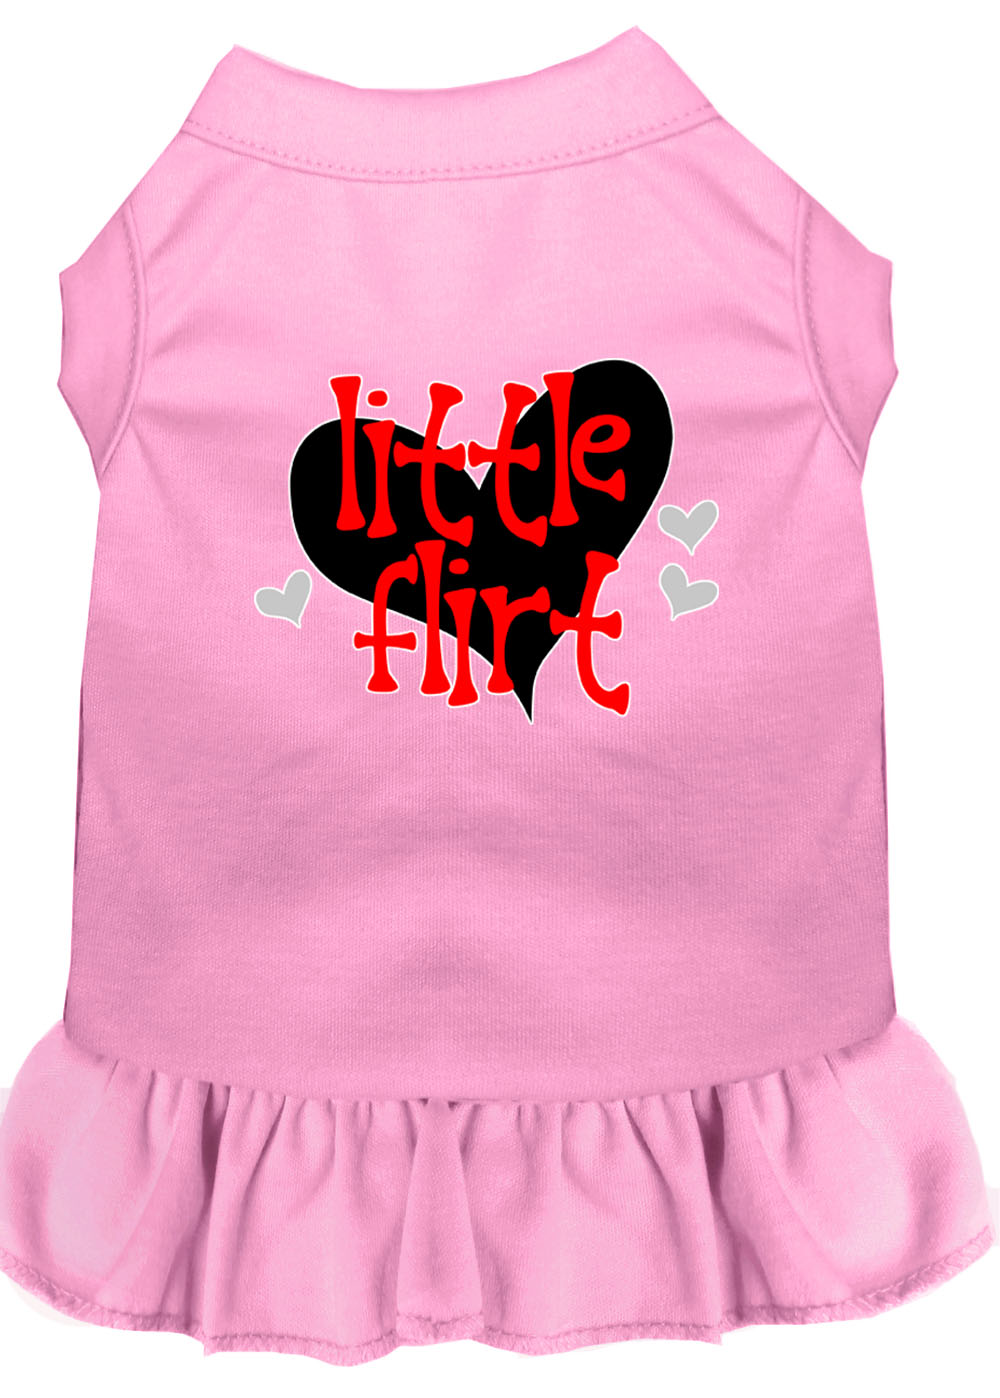 Little Flirt Screen Print Dog Dress Light Pink Lg